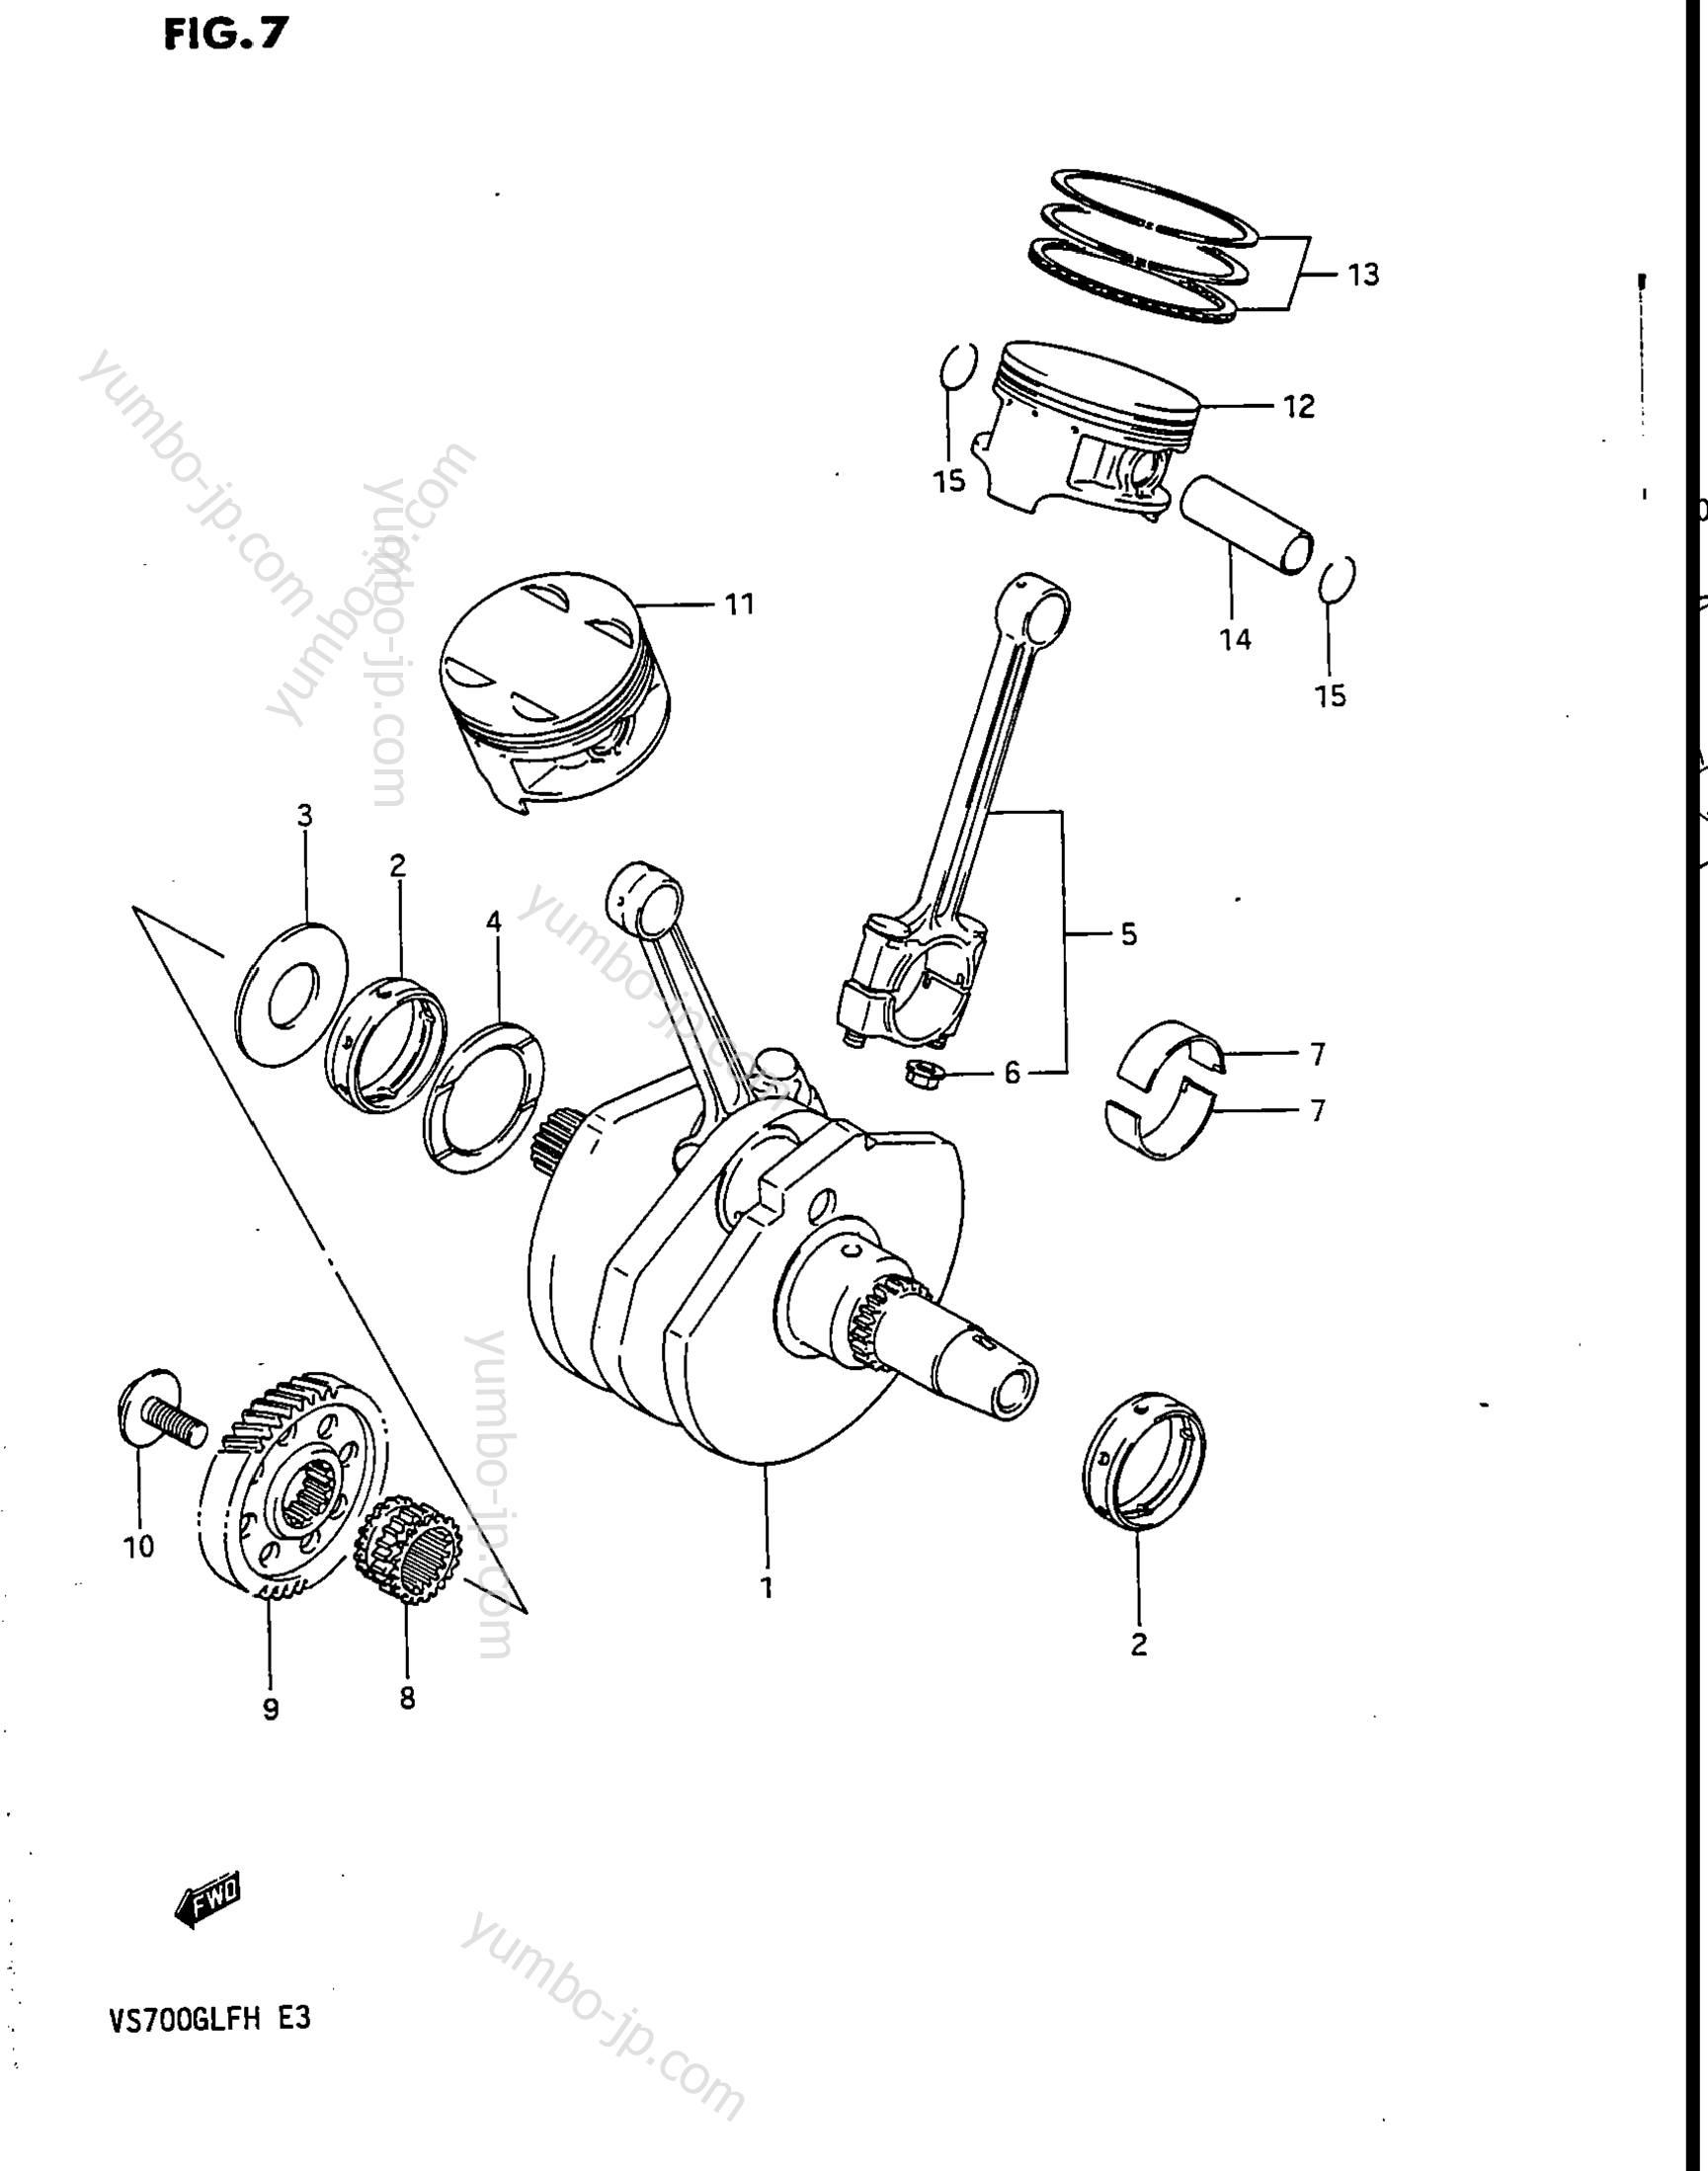 Коленвал и поршневая группа для мотоциклов SUZUKI Intruder (VS700GLEF) 1986 г.